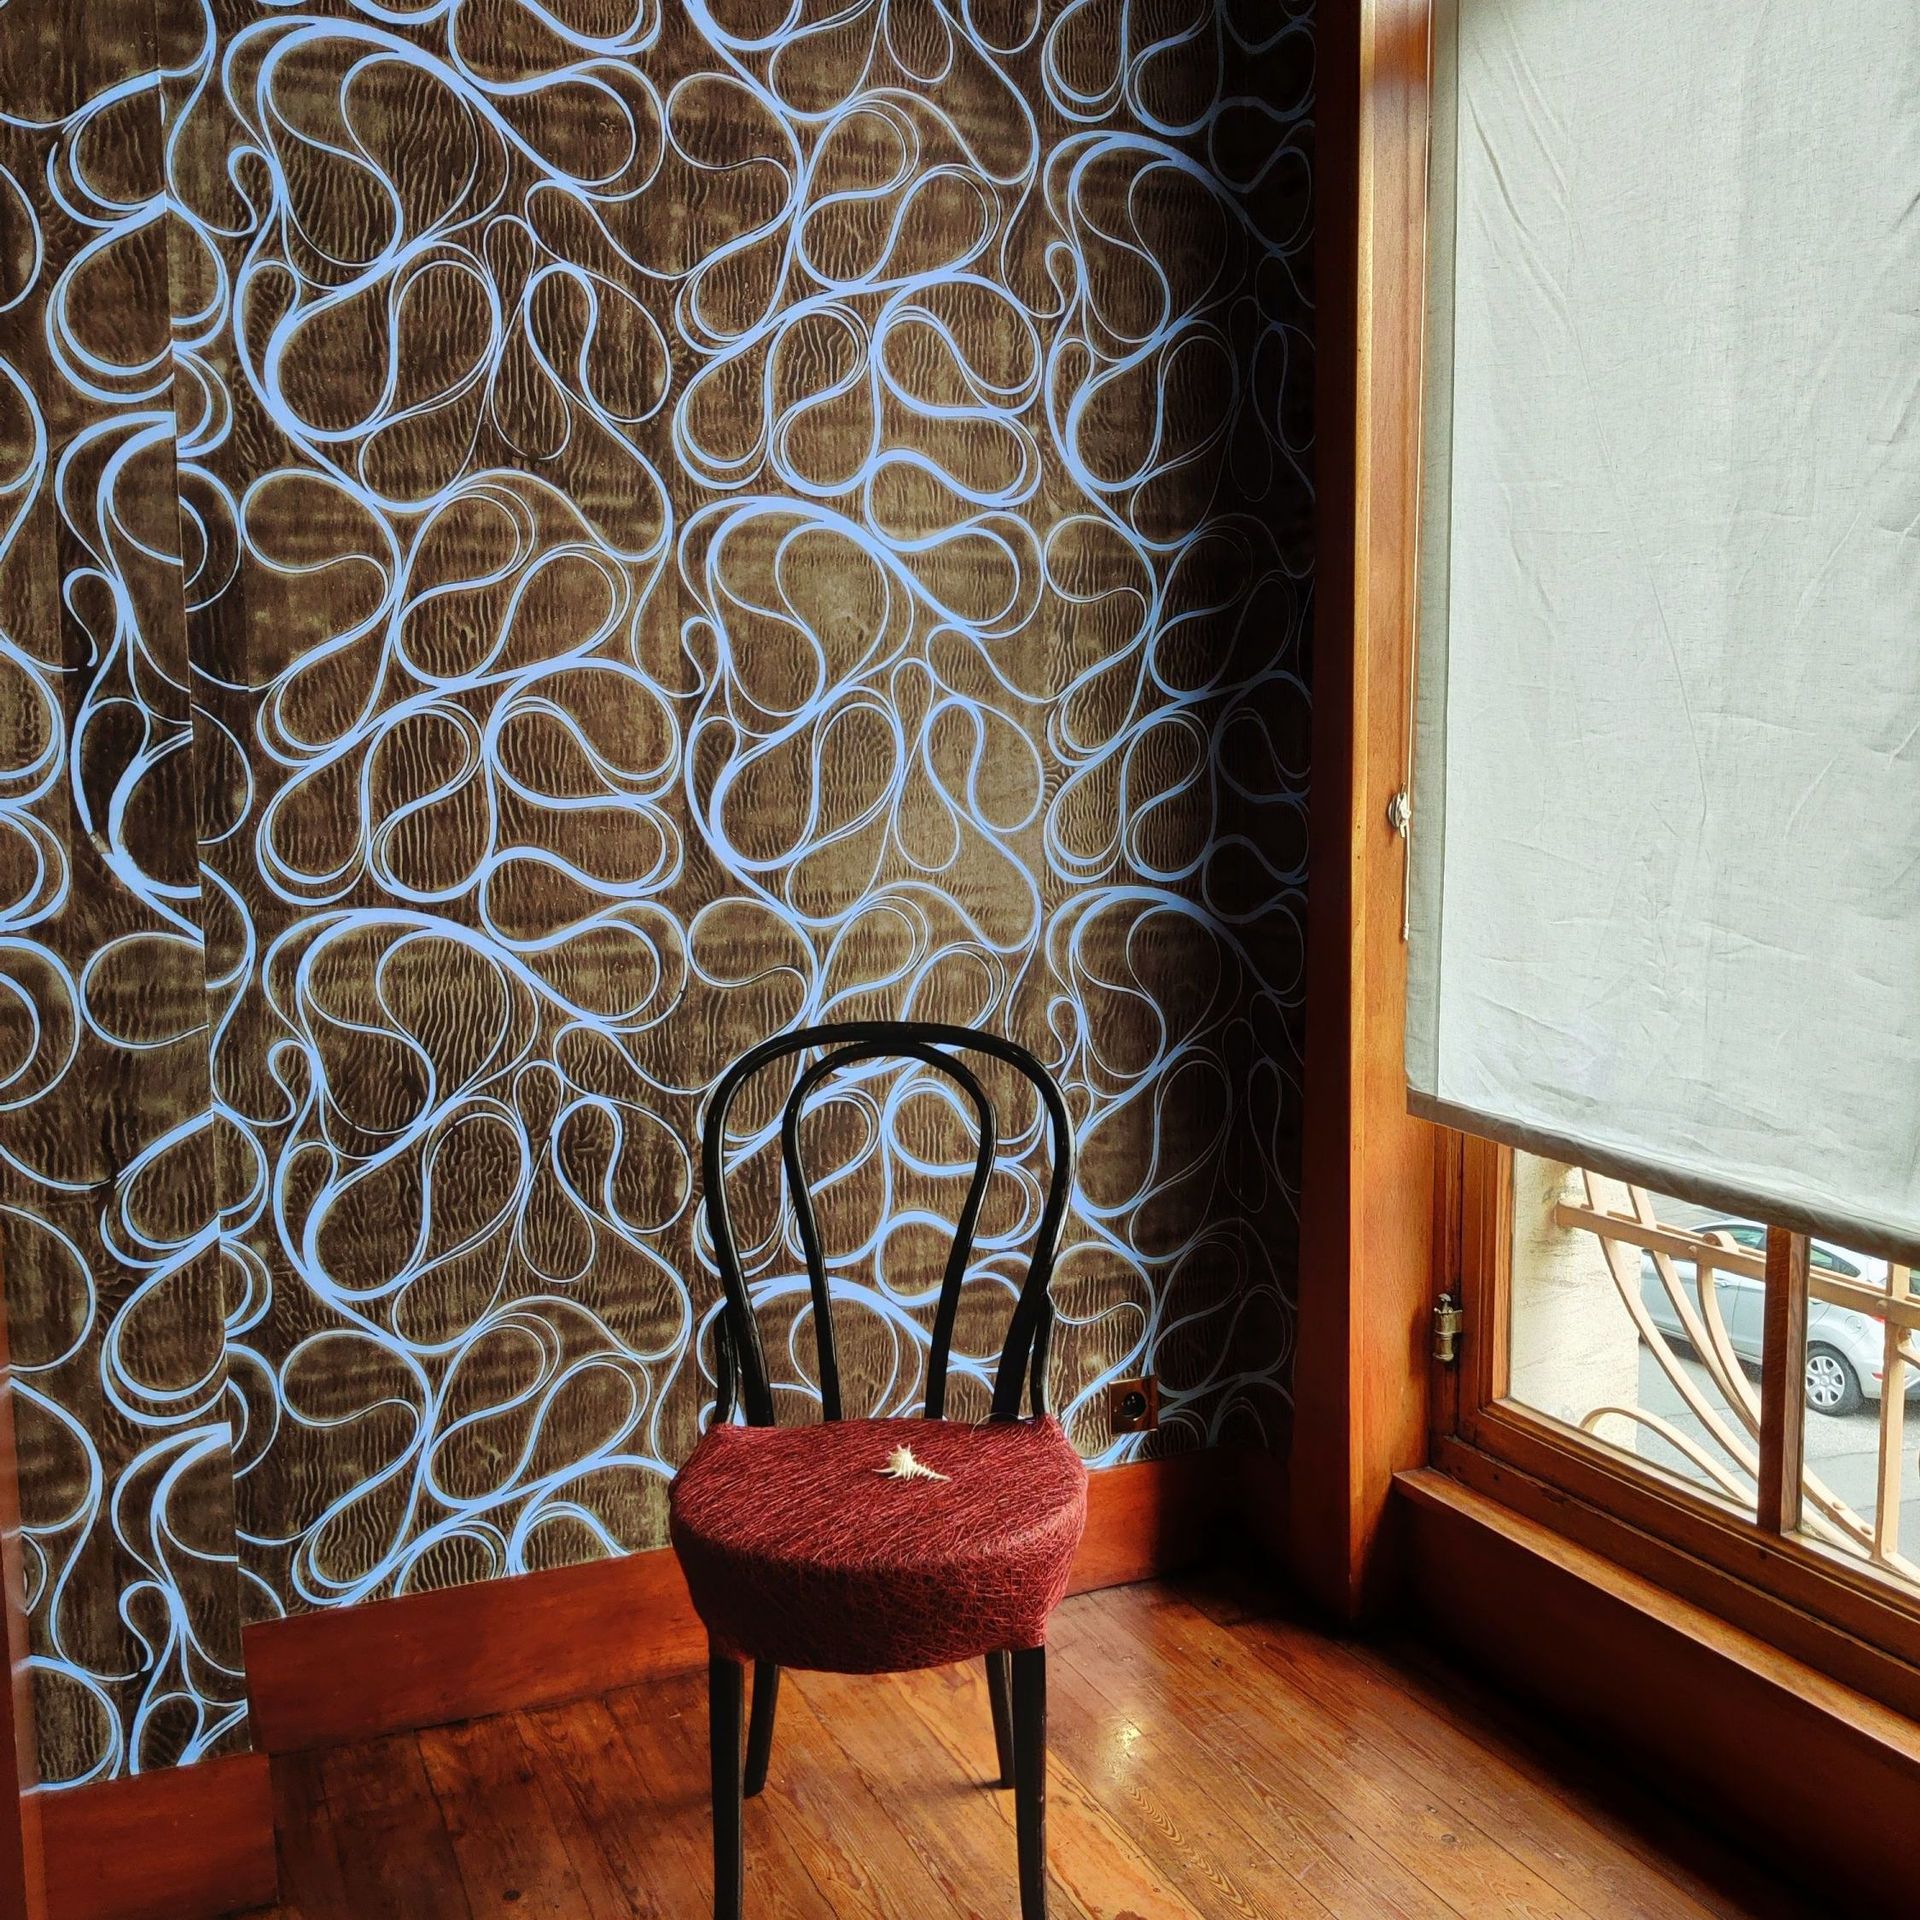 Mur du fumoir et revêtement chaise réalisé par le duo Chevalier Masson.